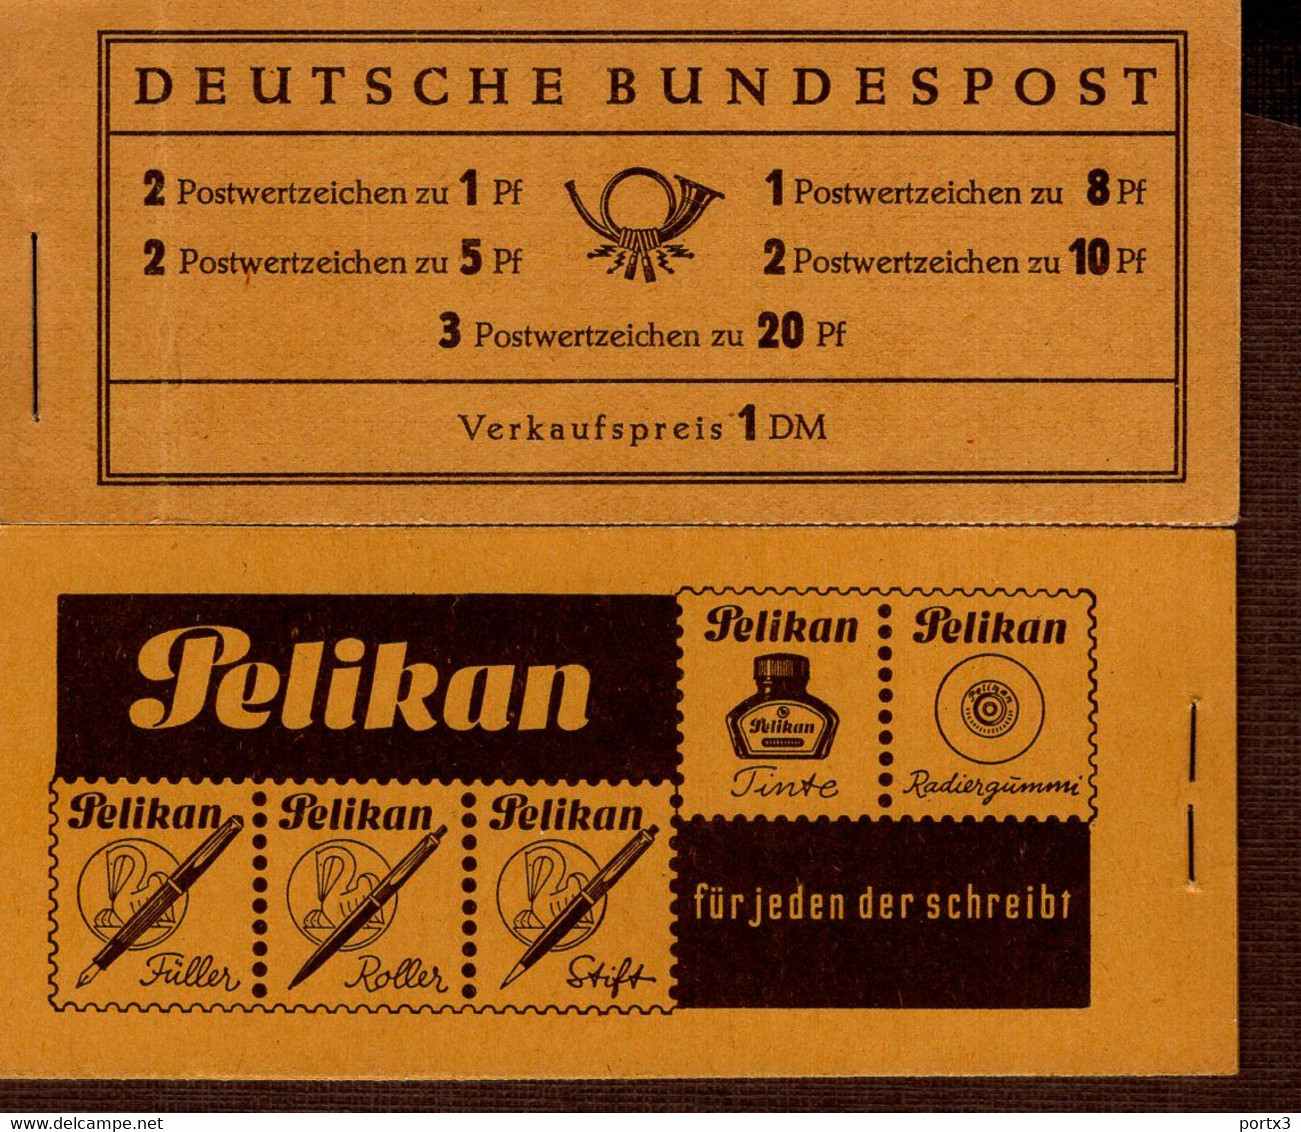 Markenheftchen Bund Postfr. MH 04 X Theodor Heuss MNH ** Neuf (3) Roter Randstreifen - 1951-1970